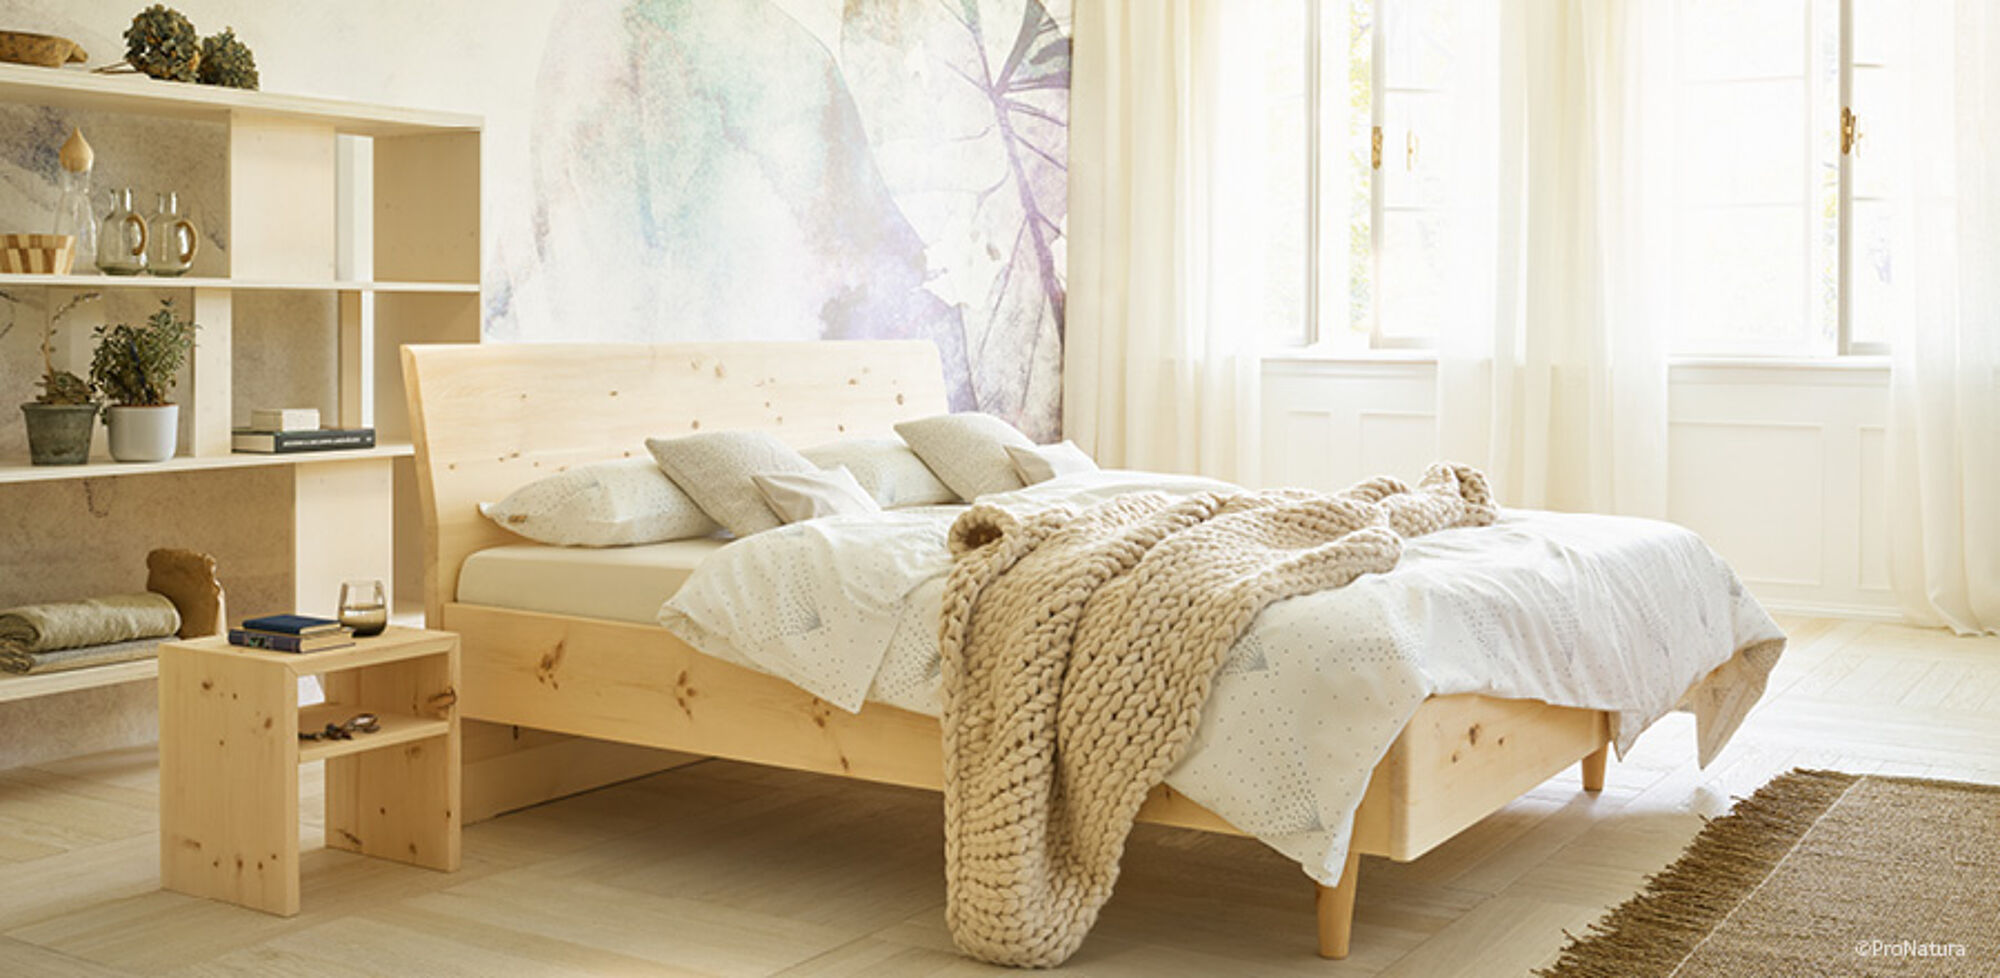 Aktuelles Trends News im Februar 2023 Möbeltischlerei woodendesign Tipps für gesunden Schlaf mit Bettsystemen vom Tischler Möbeltischler Möbelmanufaktur Hamburg